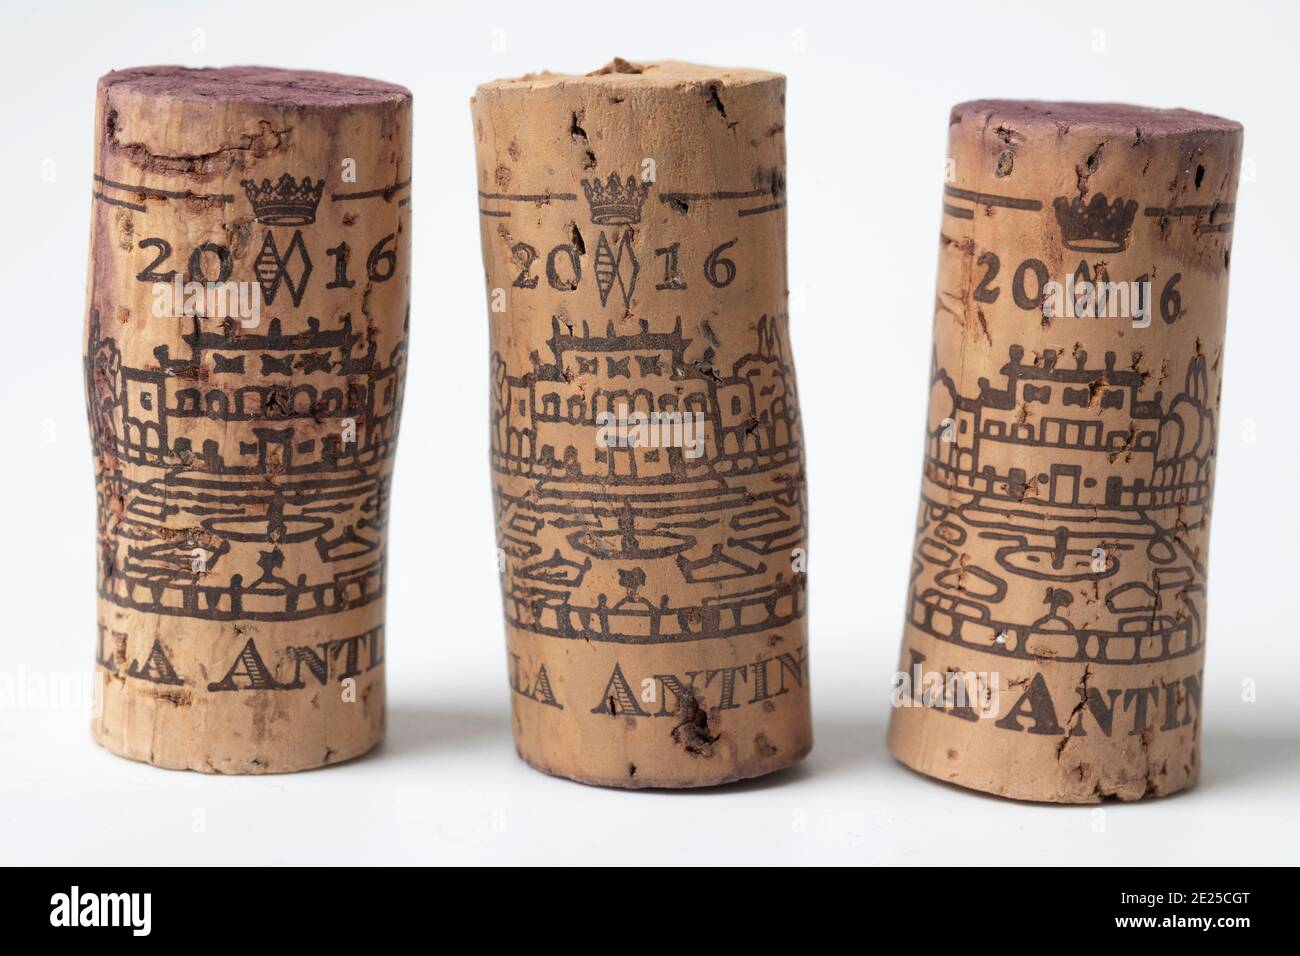 Wine bottle corks, Villa Antinori 2016 Chianti Classico Stock Photo